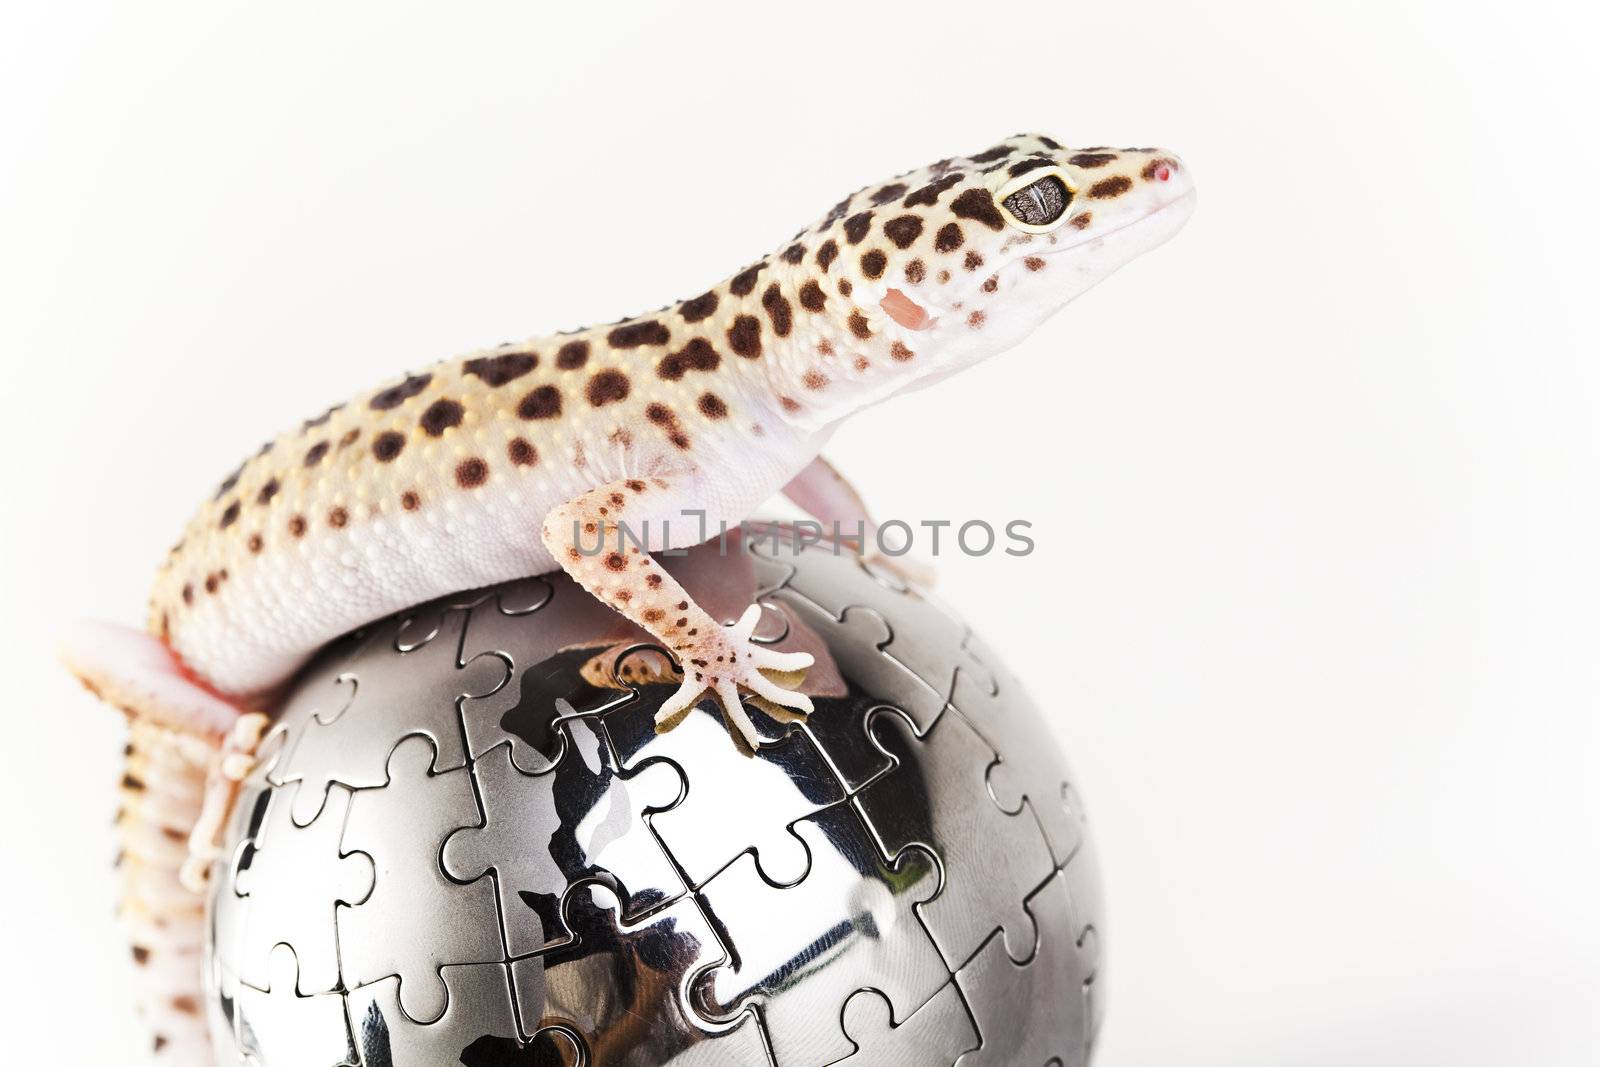 The gecko by JanPietruszka